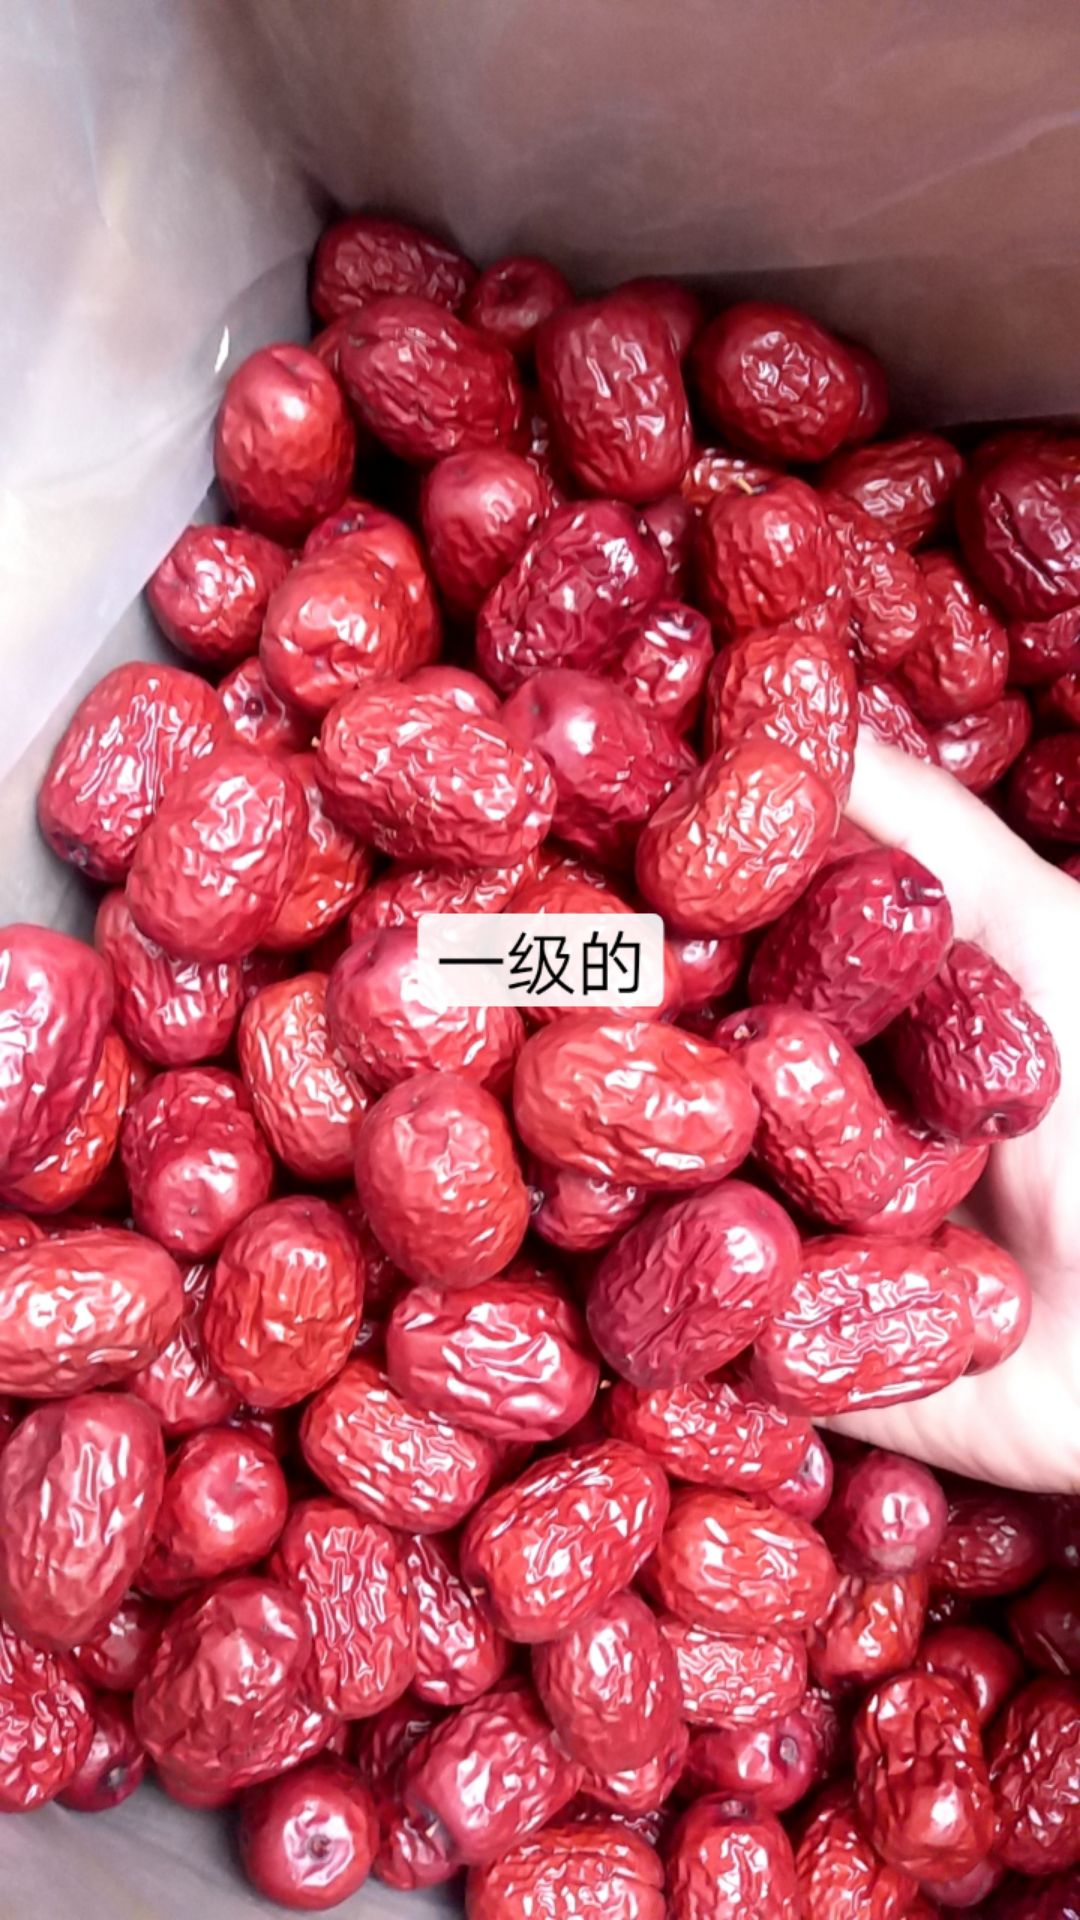 新郑市灰枣 大家好咱这边是新疆红枣生产厂家的一手货源大量出售有需要